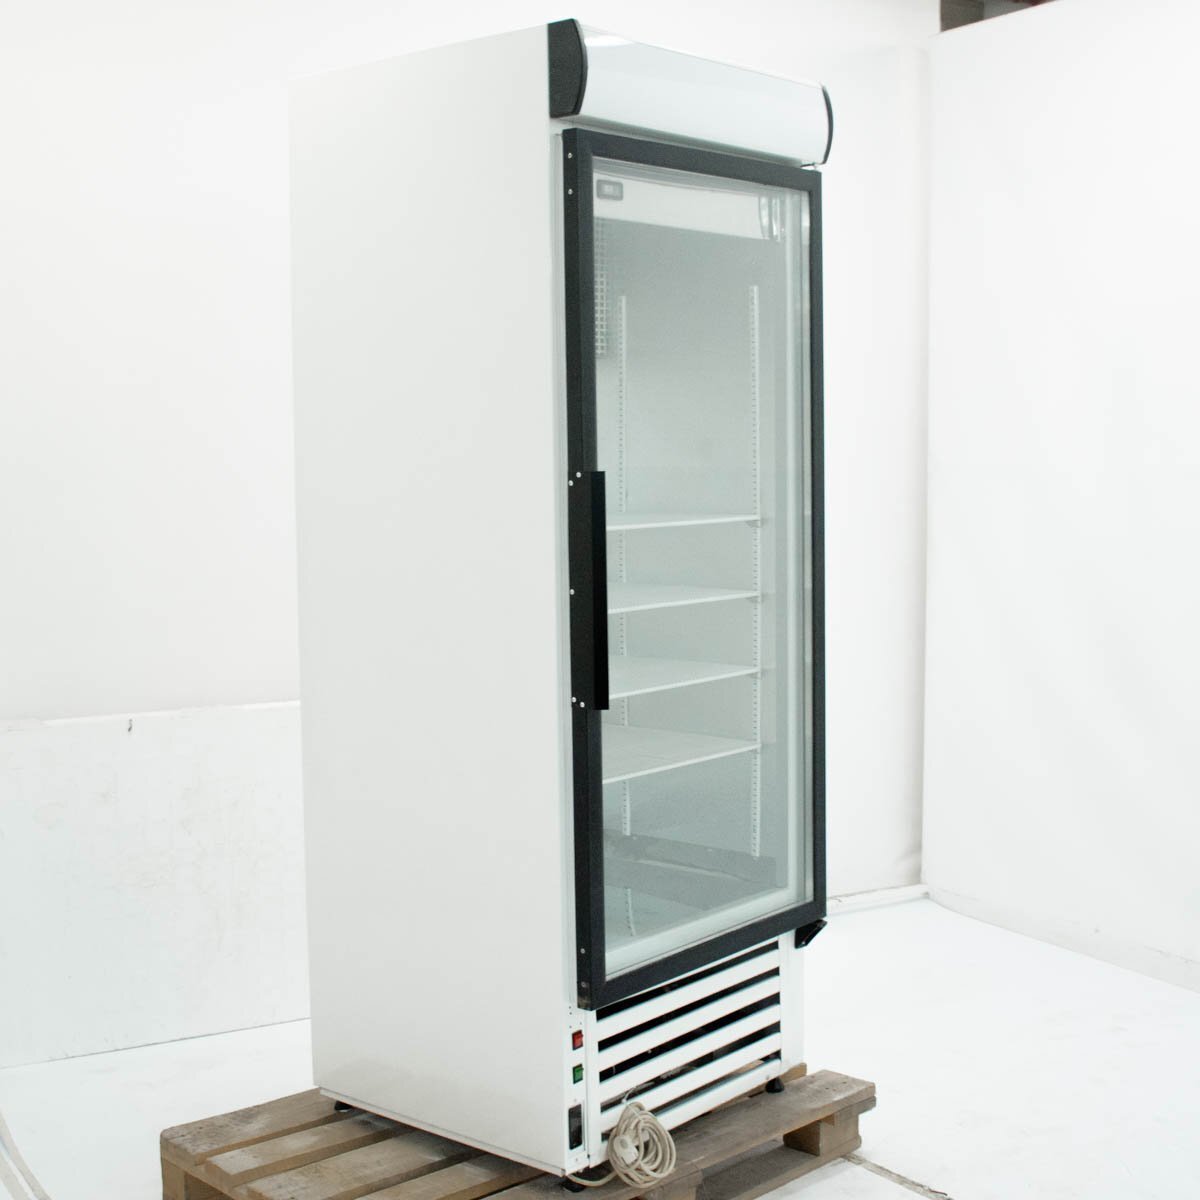 Шкаф холодильный Cold SW-600 DP